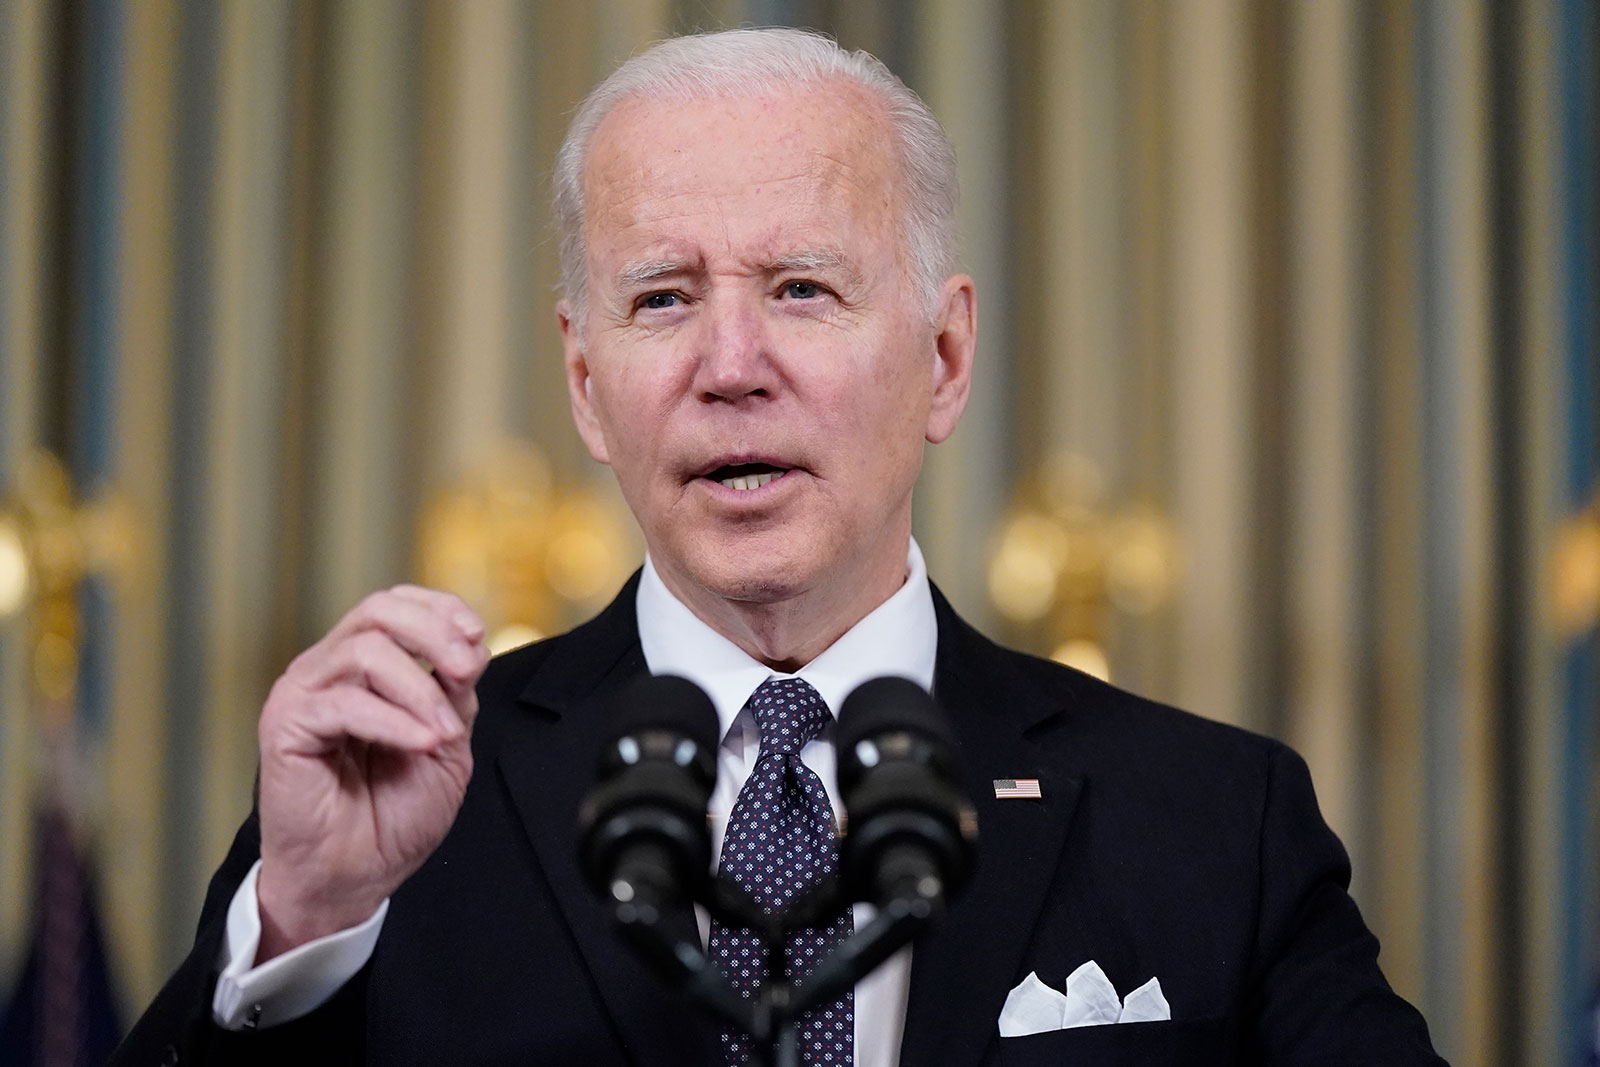 US President Joe Biden speaks at the White House on Monday.